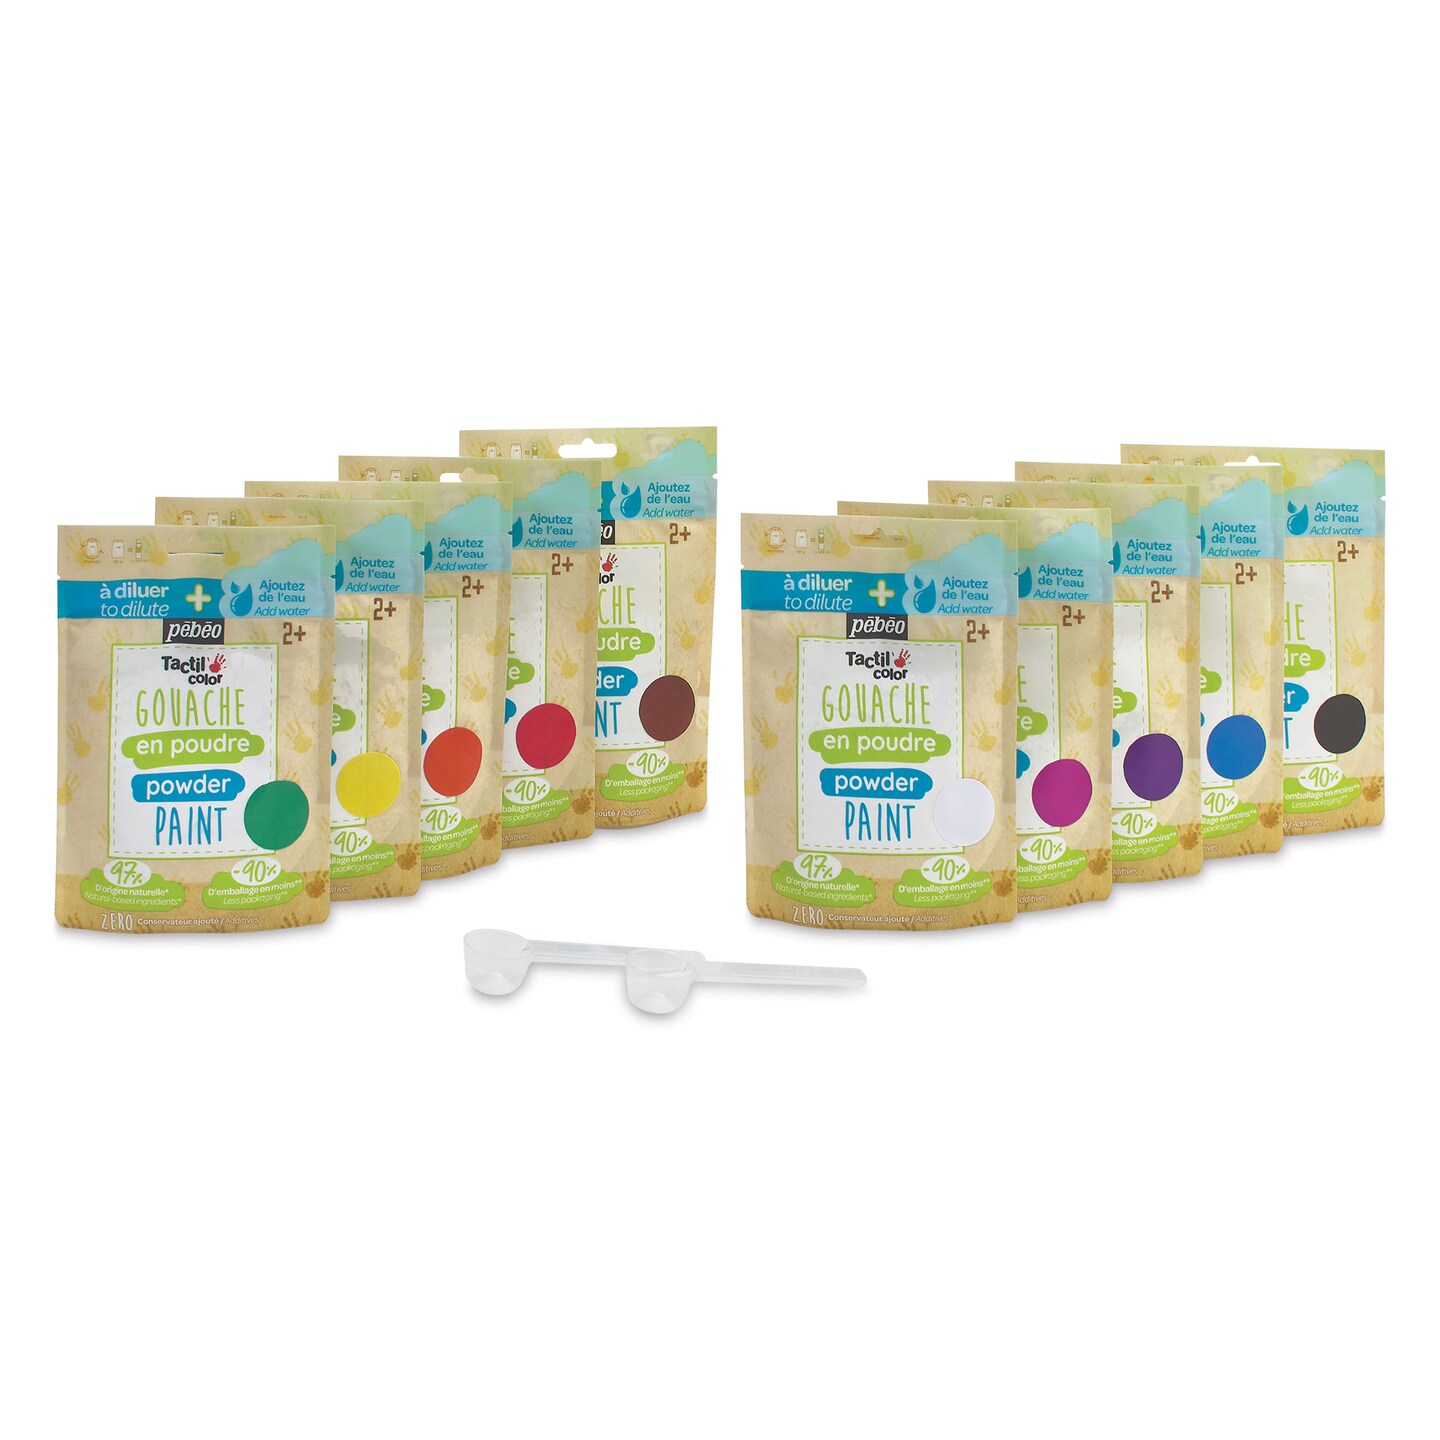 Pebeo Tactilcolor Powder Gouache Paints - Assorted Colors, 180 g (6.3 oz) Bags, Set of 10